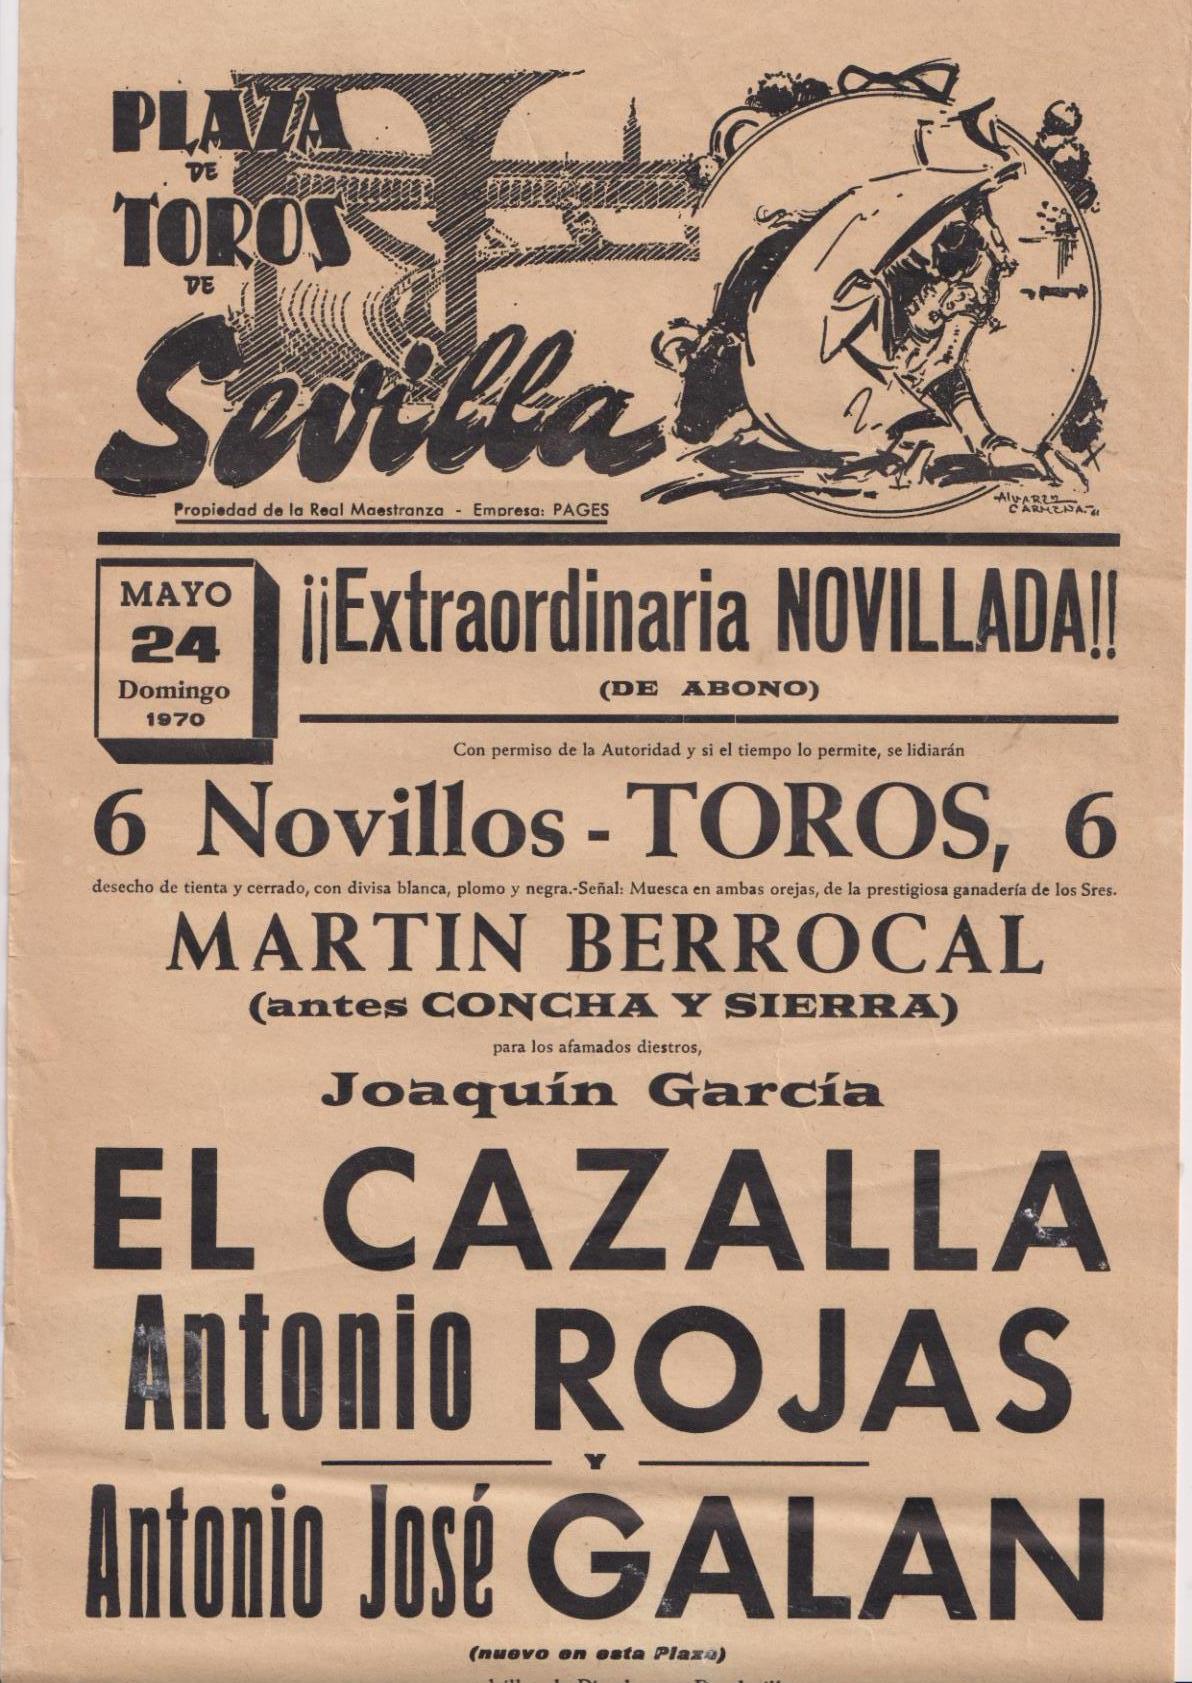 Cartel (45x21) Plaza de Toros de Sevilla 24 de mayo 1970. Extraordinaria Novillada